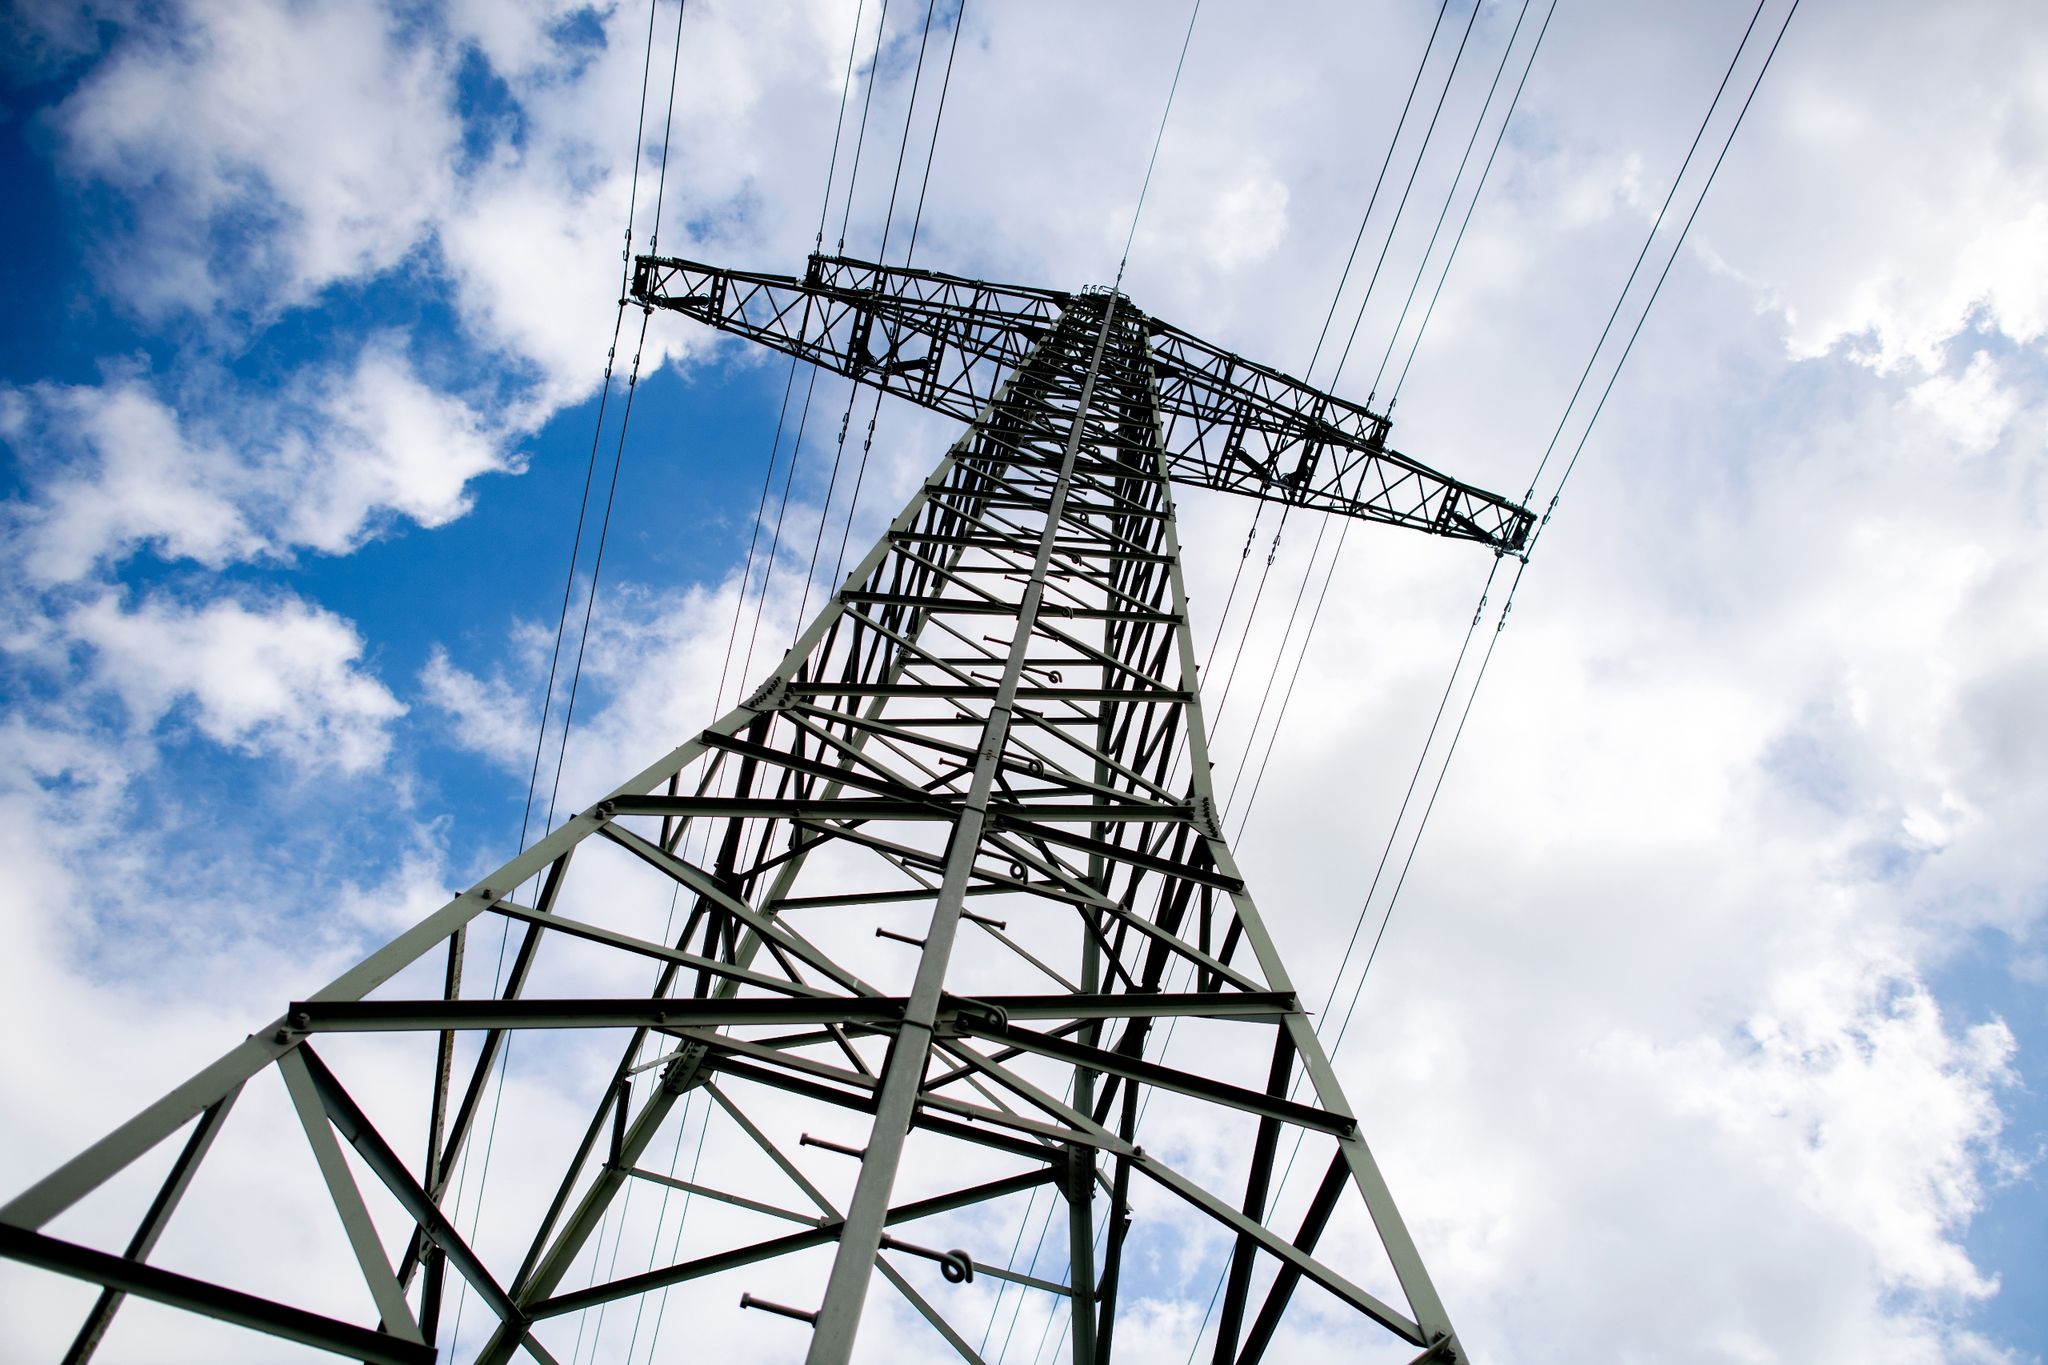 Mehr Verbraucherschutz: EU-Strommarktreform beschlossen